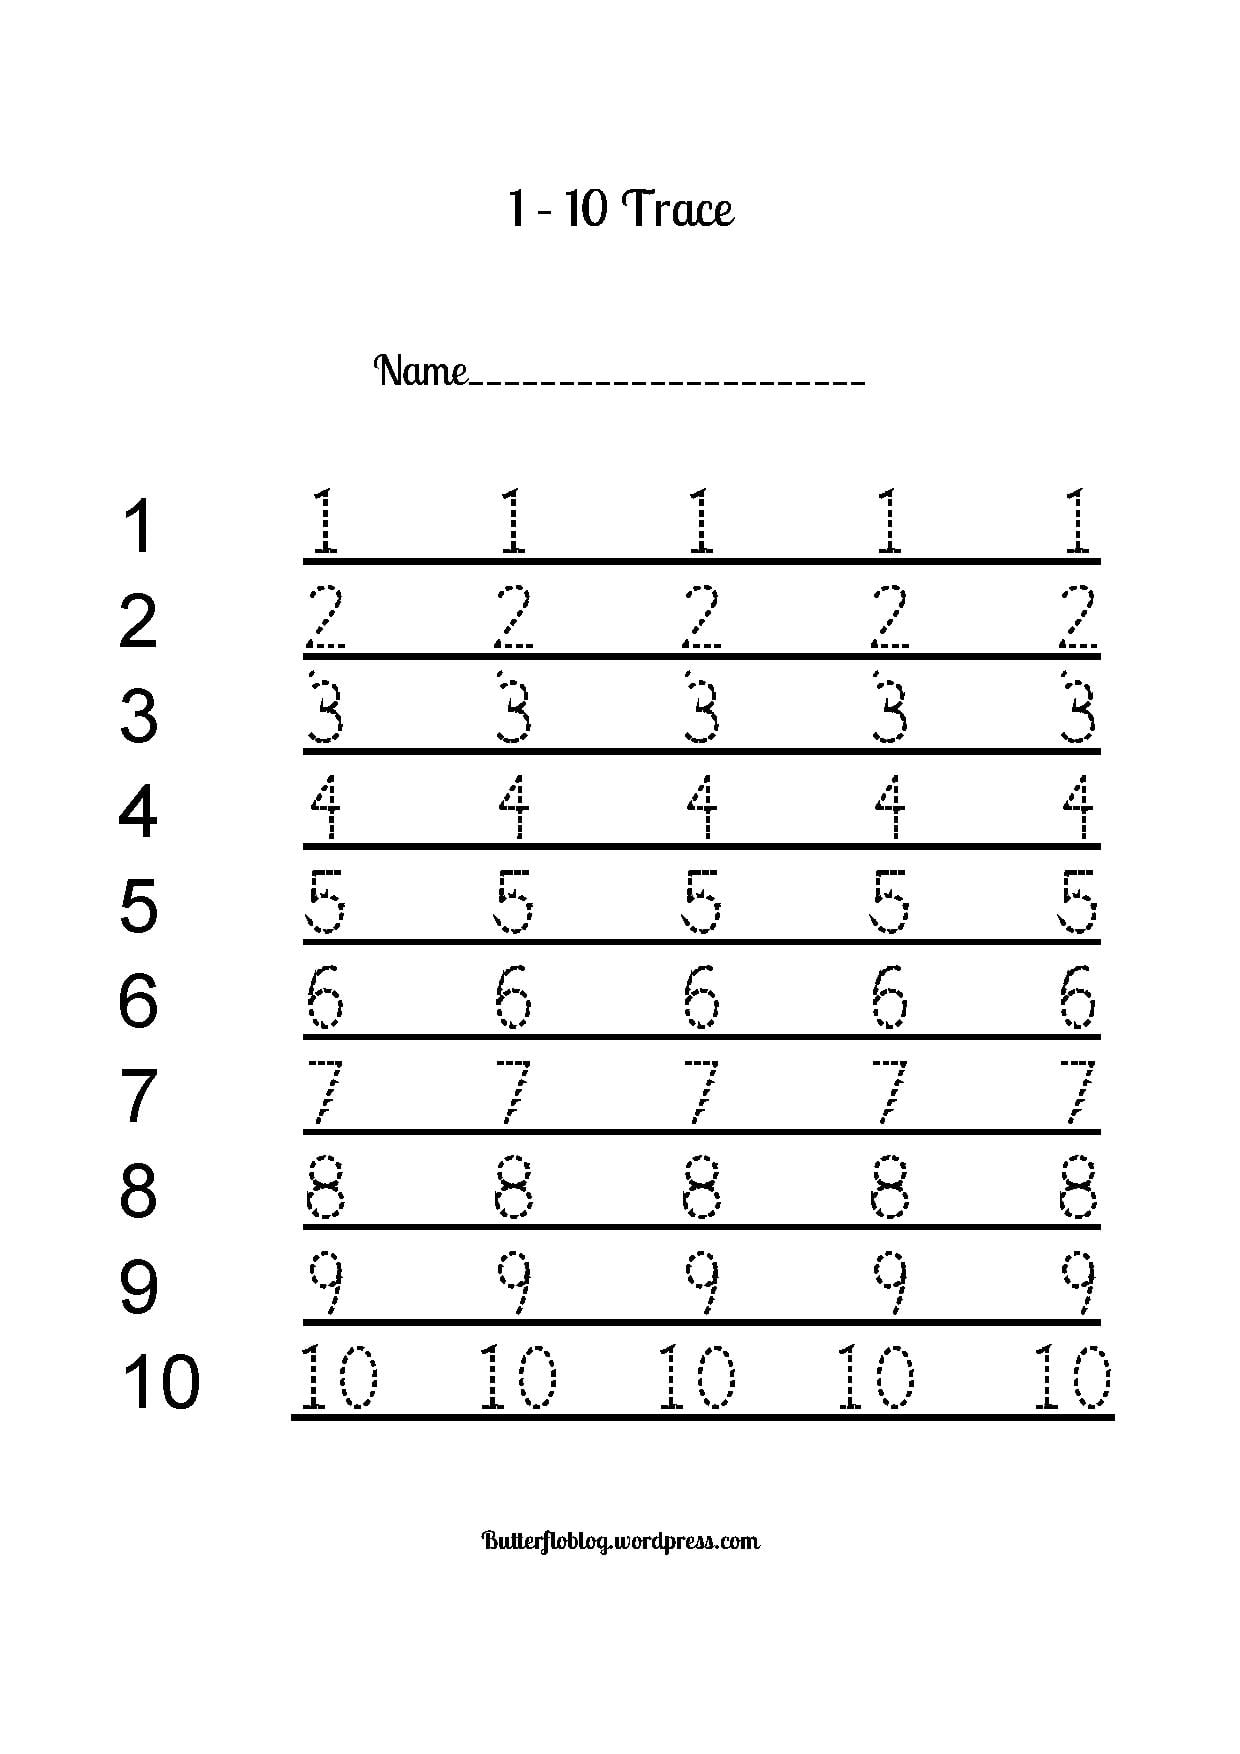 number-trace-worksheet-1-10